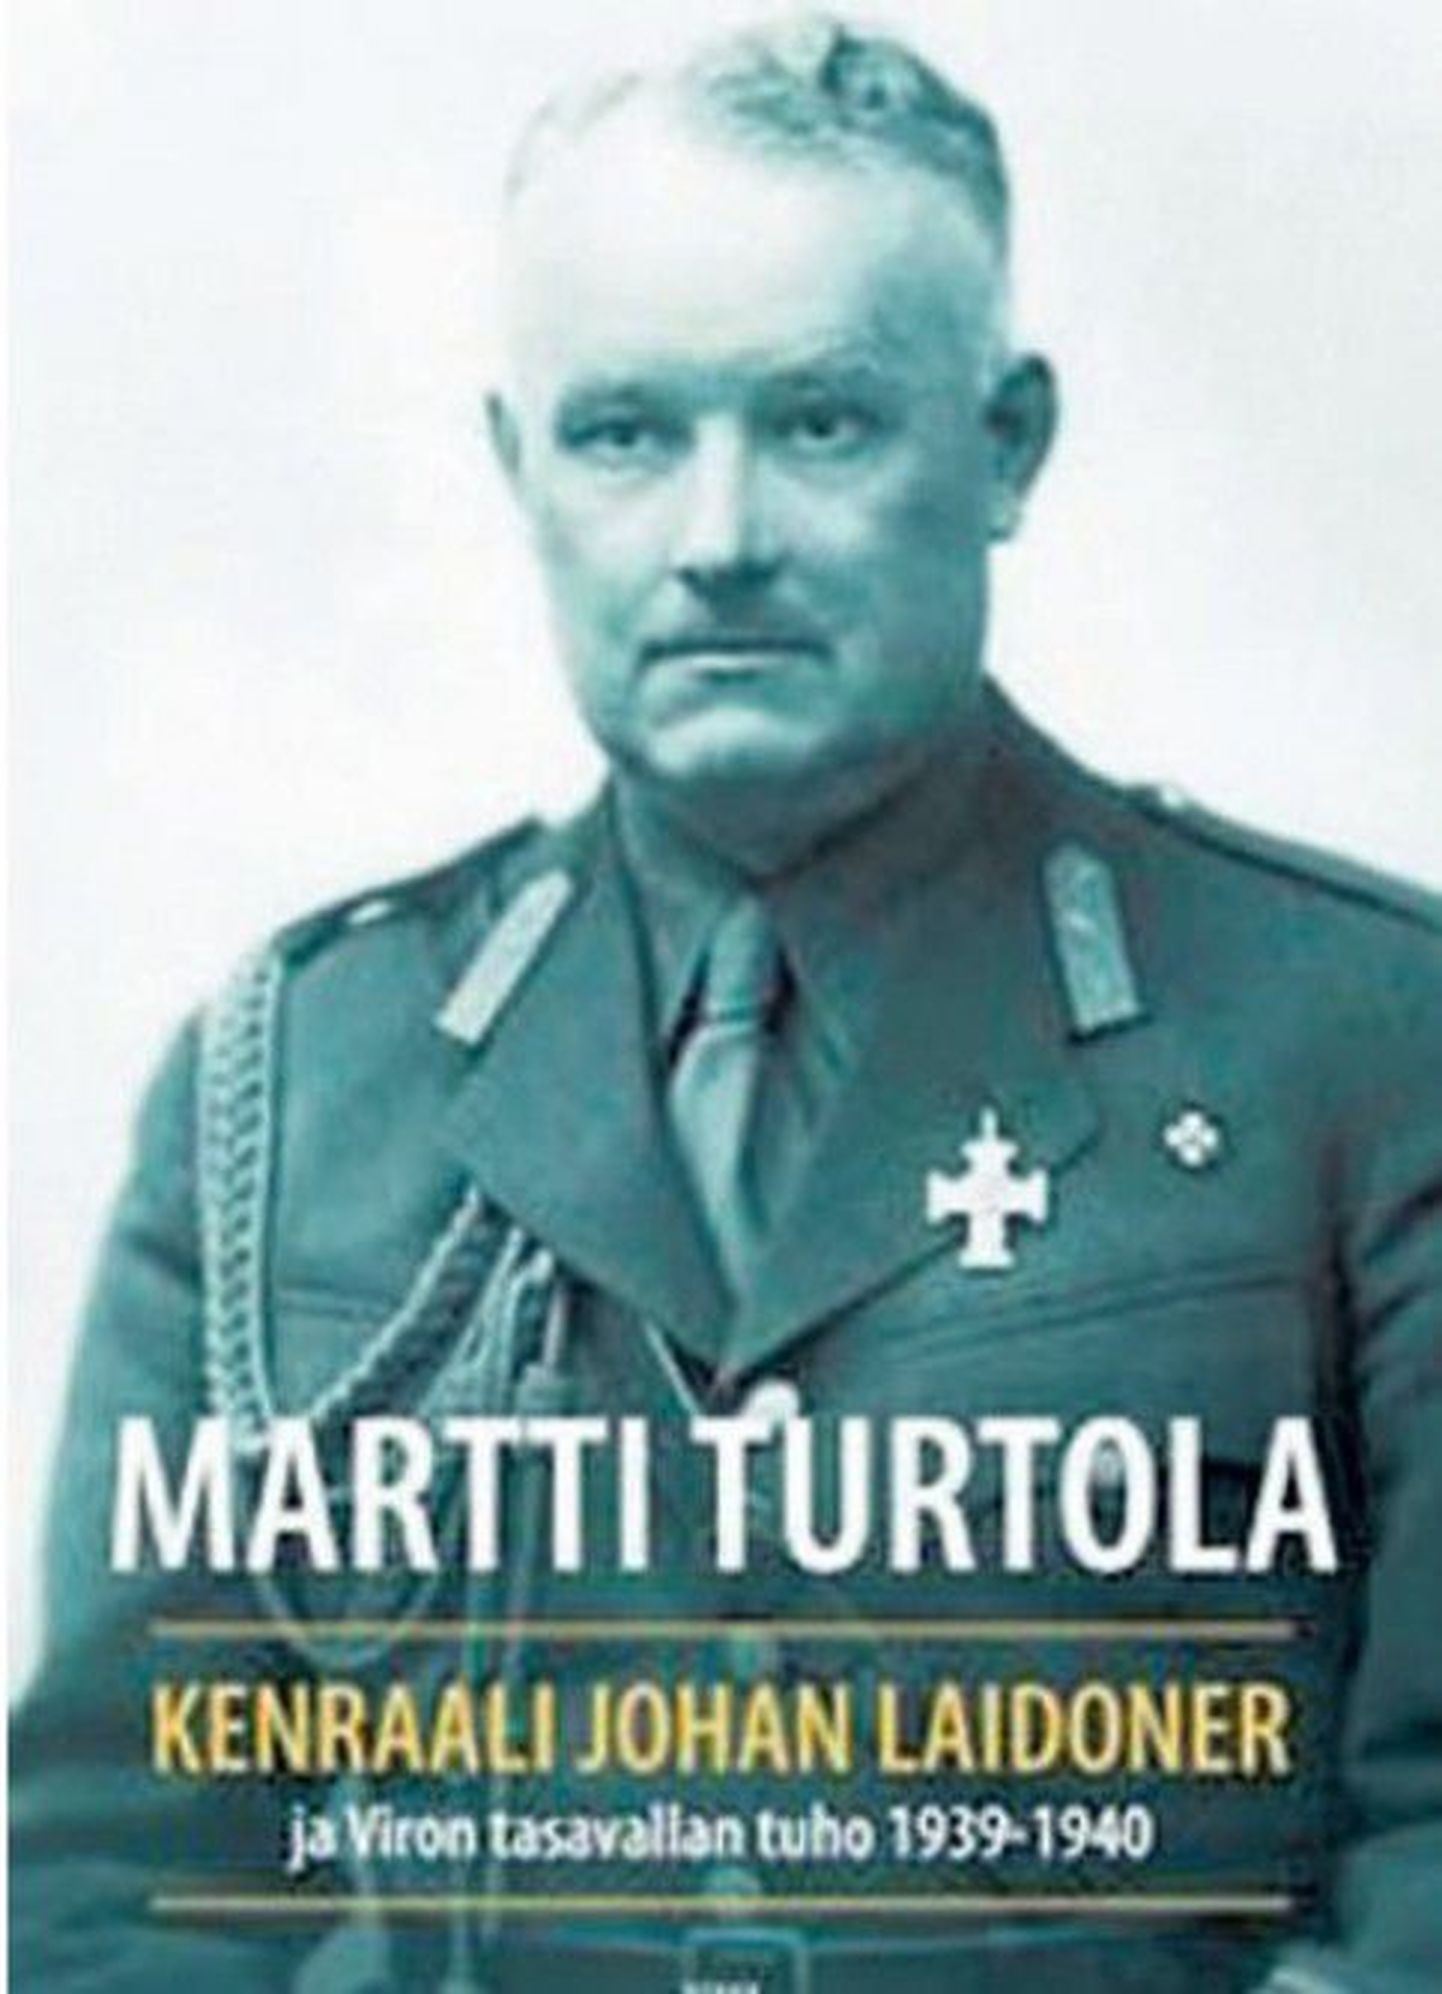 Martti Turttola «Kenraali Johan Laidoner ja Viron tasavallan tuho 1939-1940»